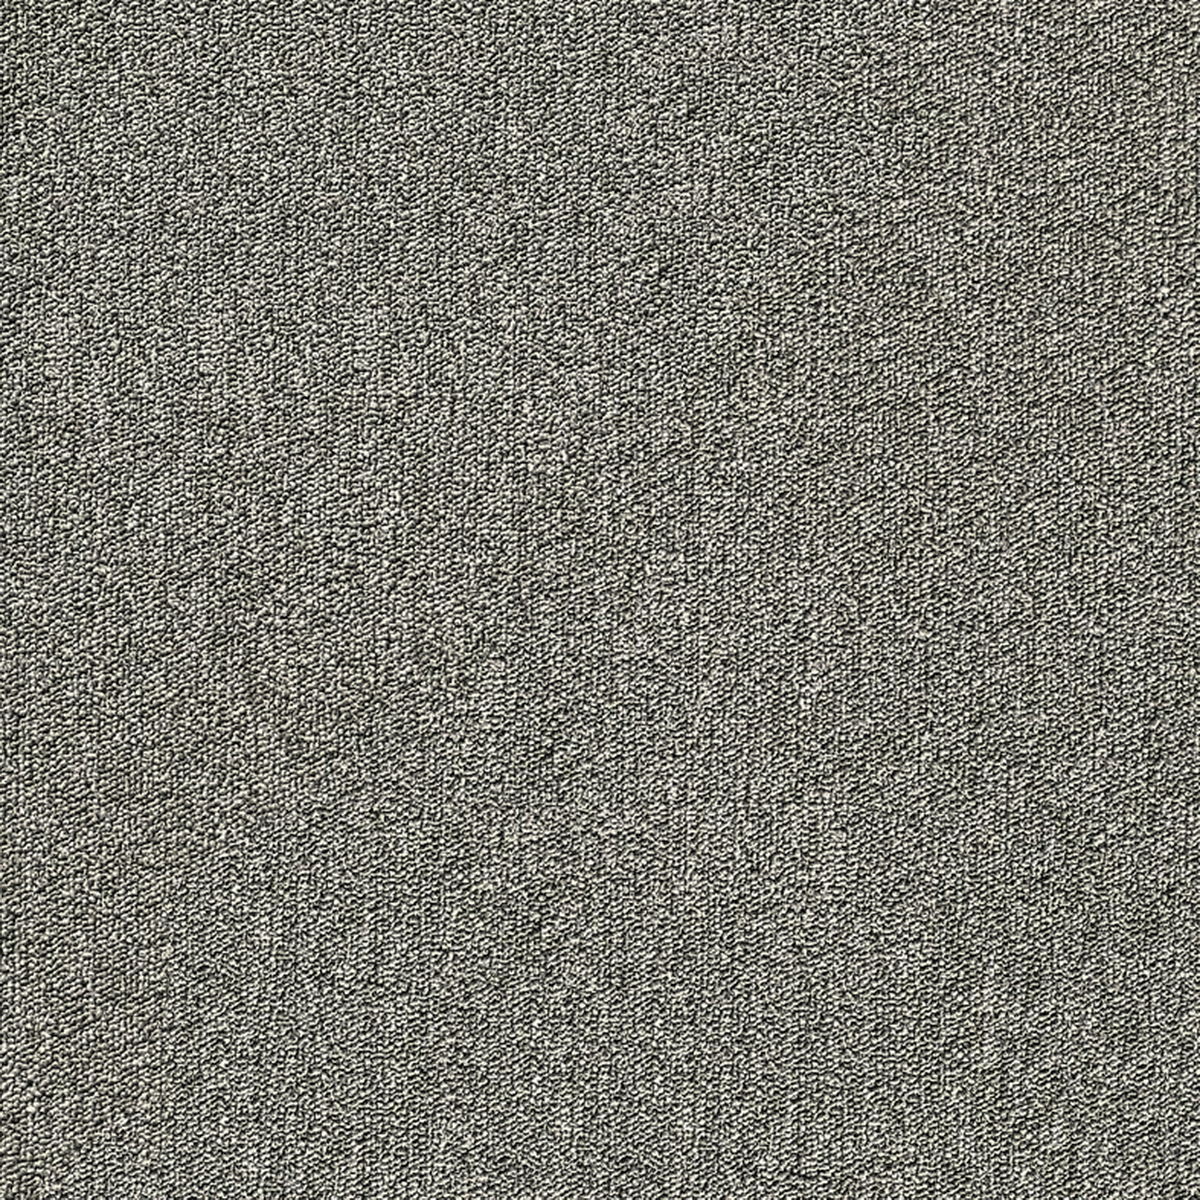 办公地毯ID9888